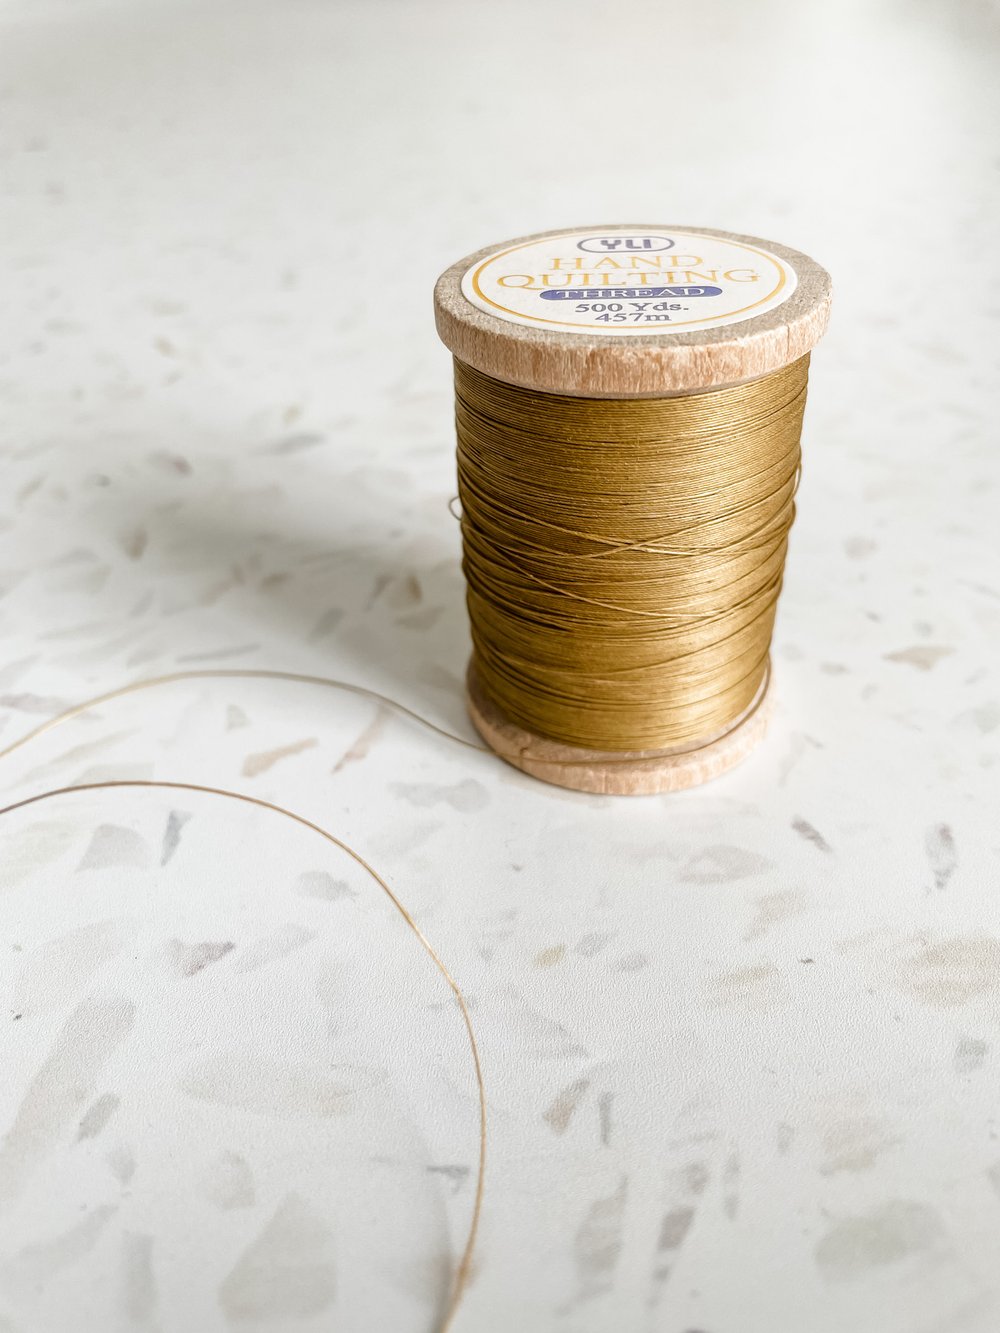 Quilting Thread, Ecru, YLI, Glazed Quilting Cotton, 40 wt Quilting Thread,  Machine Quilting Thread, Hand Quilting Thread, Egyptian Cotton